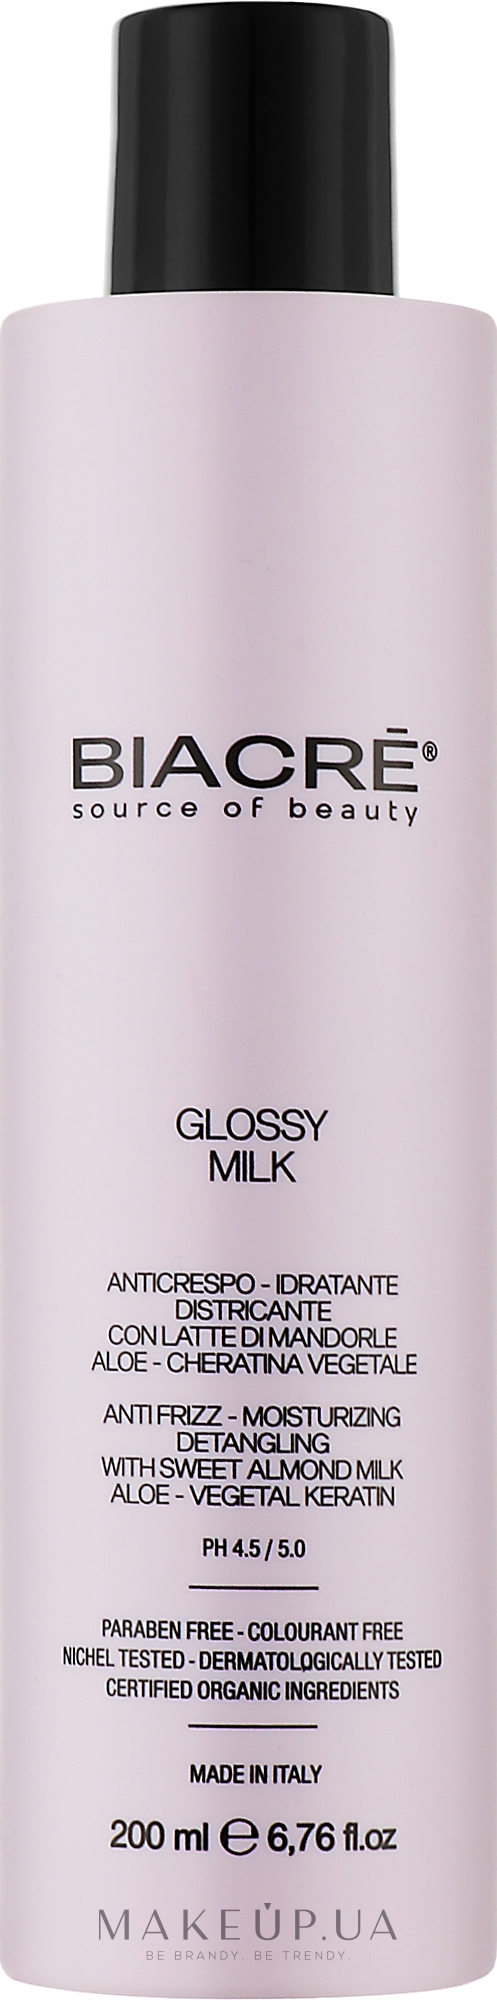 Увлажняющее молочко для волос с Био-Кератином - Biacre Glossy Milk  — фото 200ml